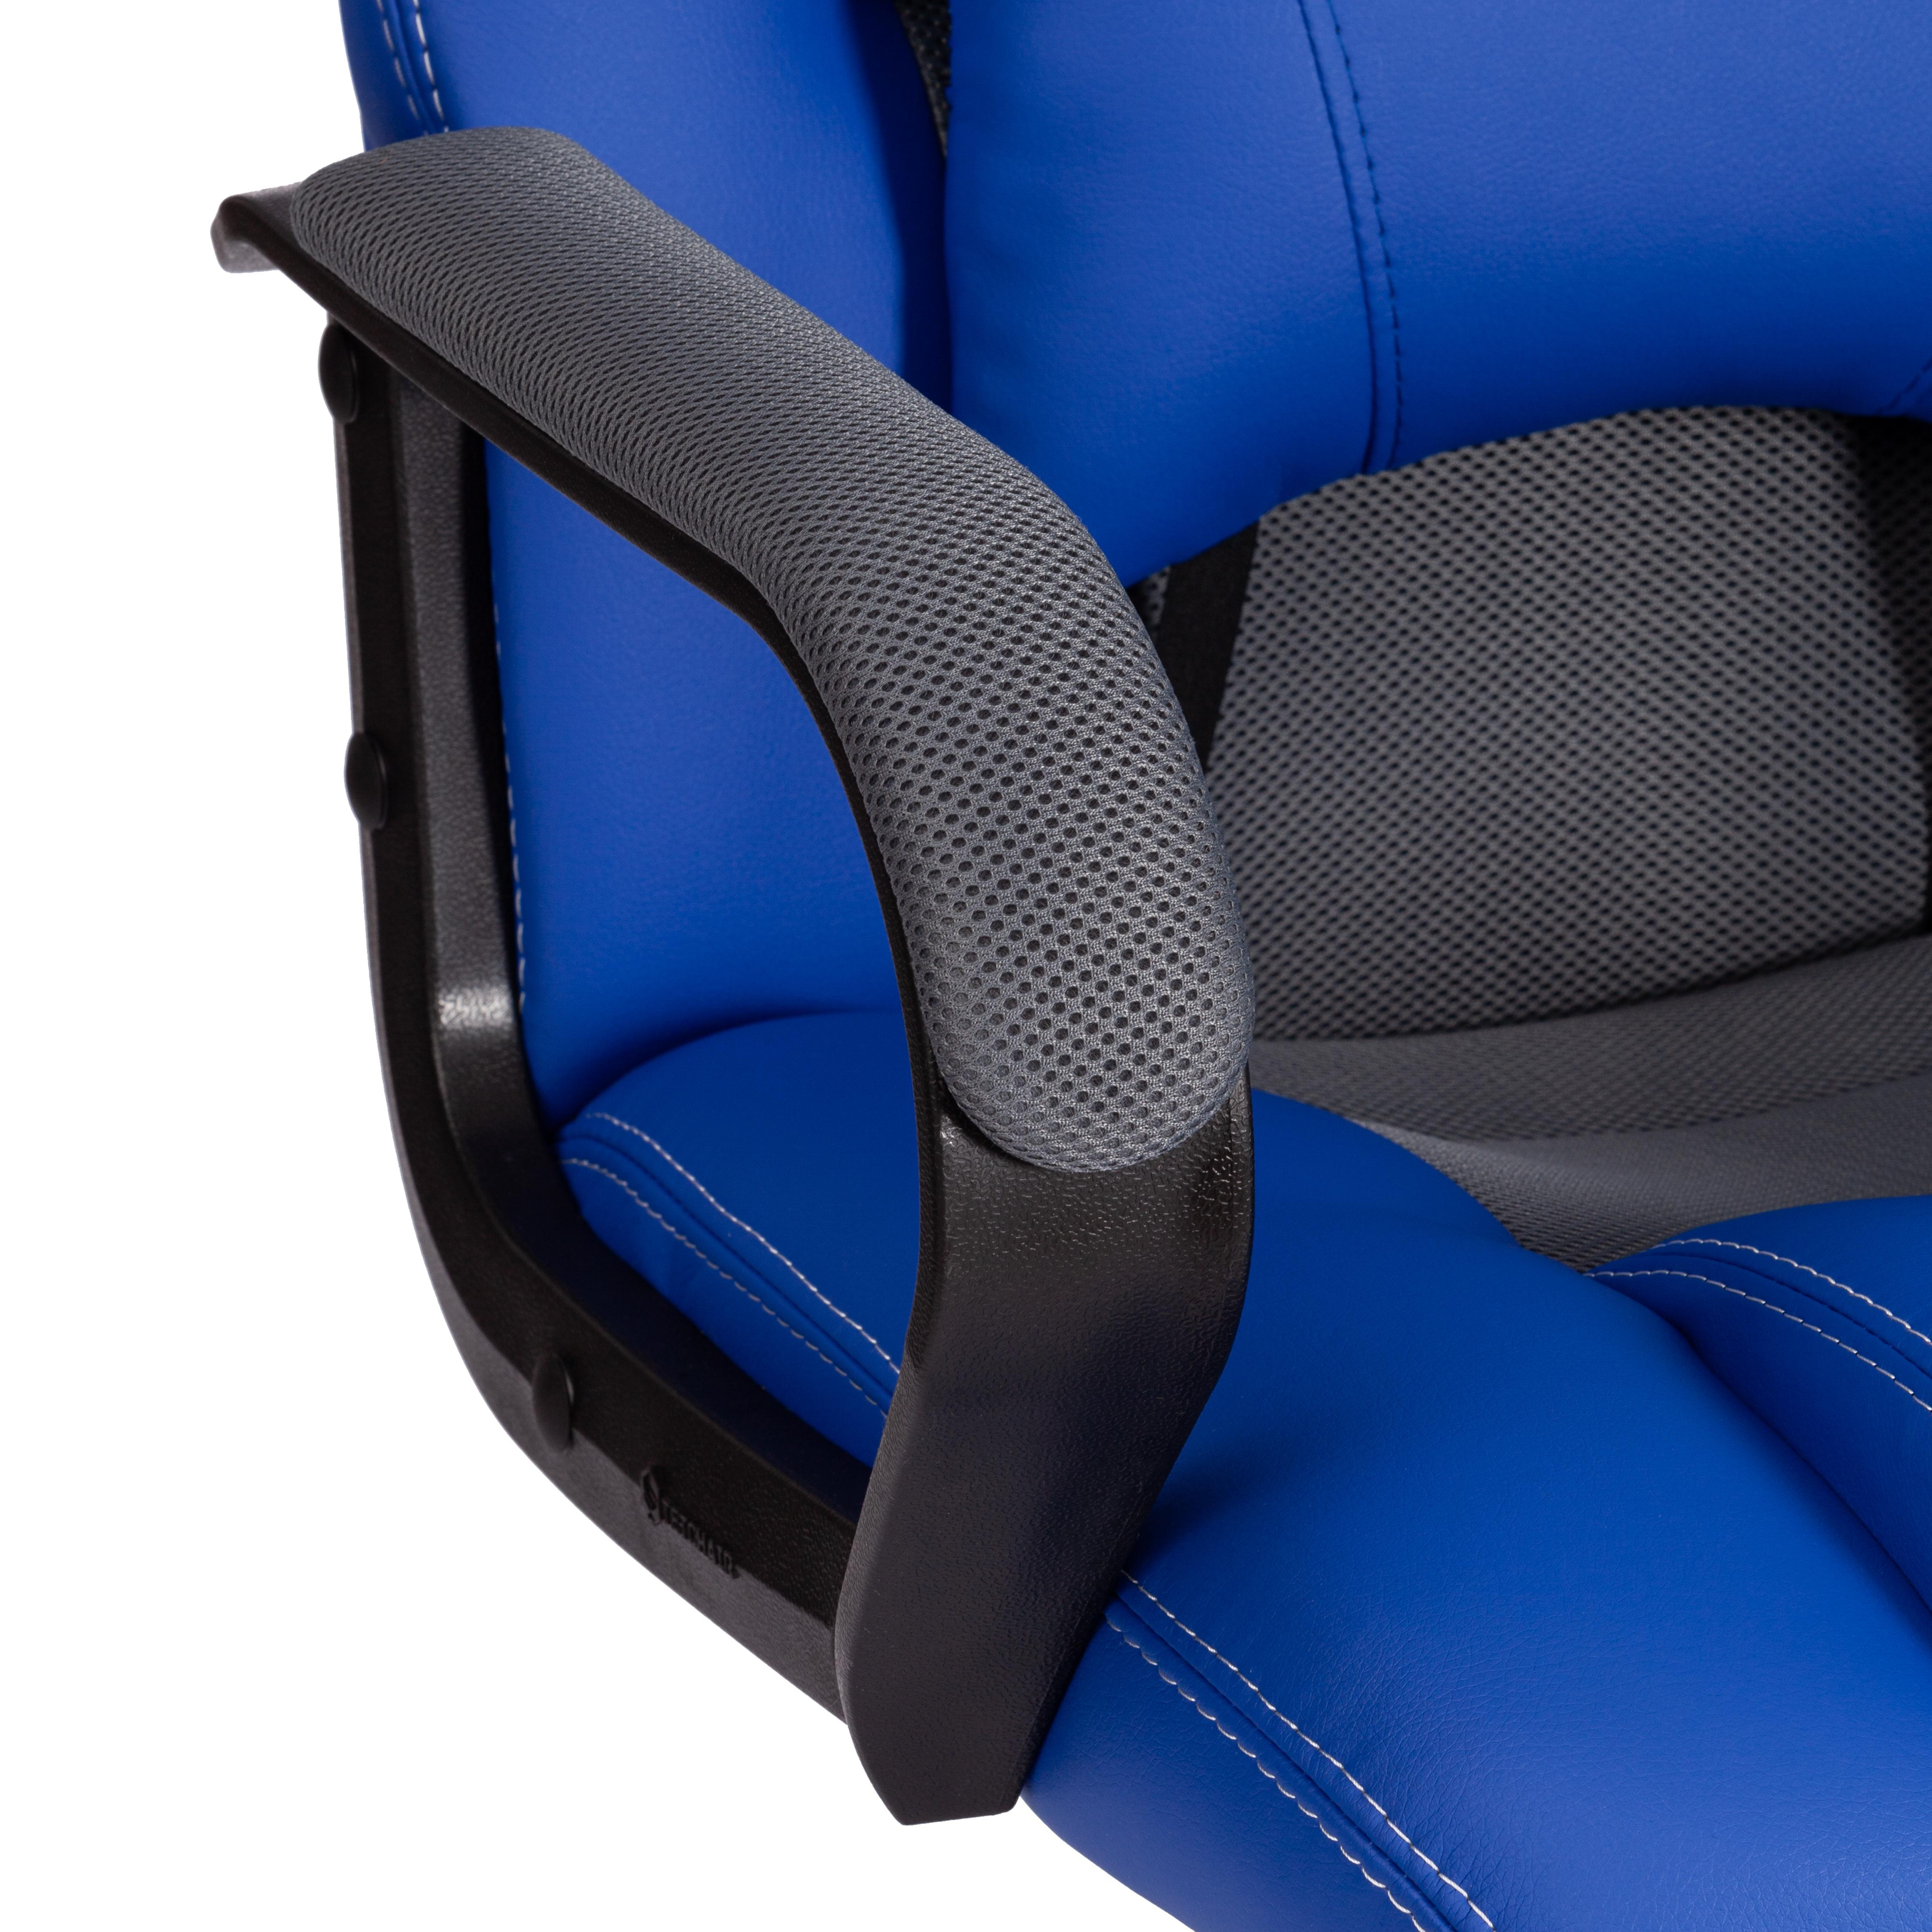 Кресло DRIVER (22) кож/зам/ткань, синий/серый, 36-39/TW-12